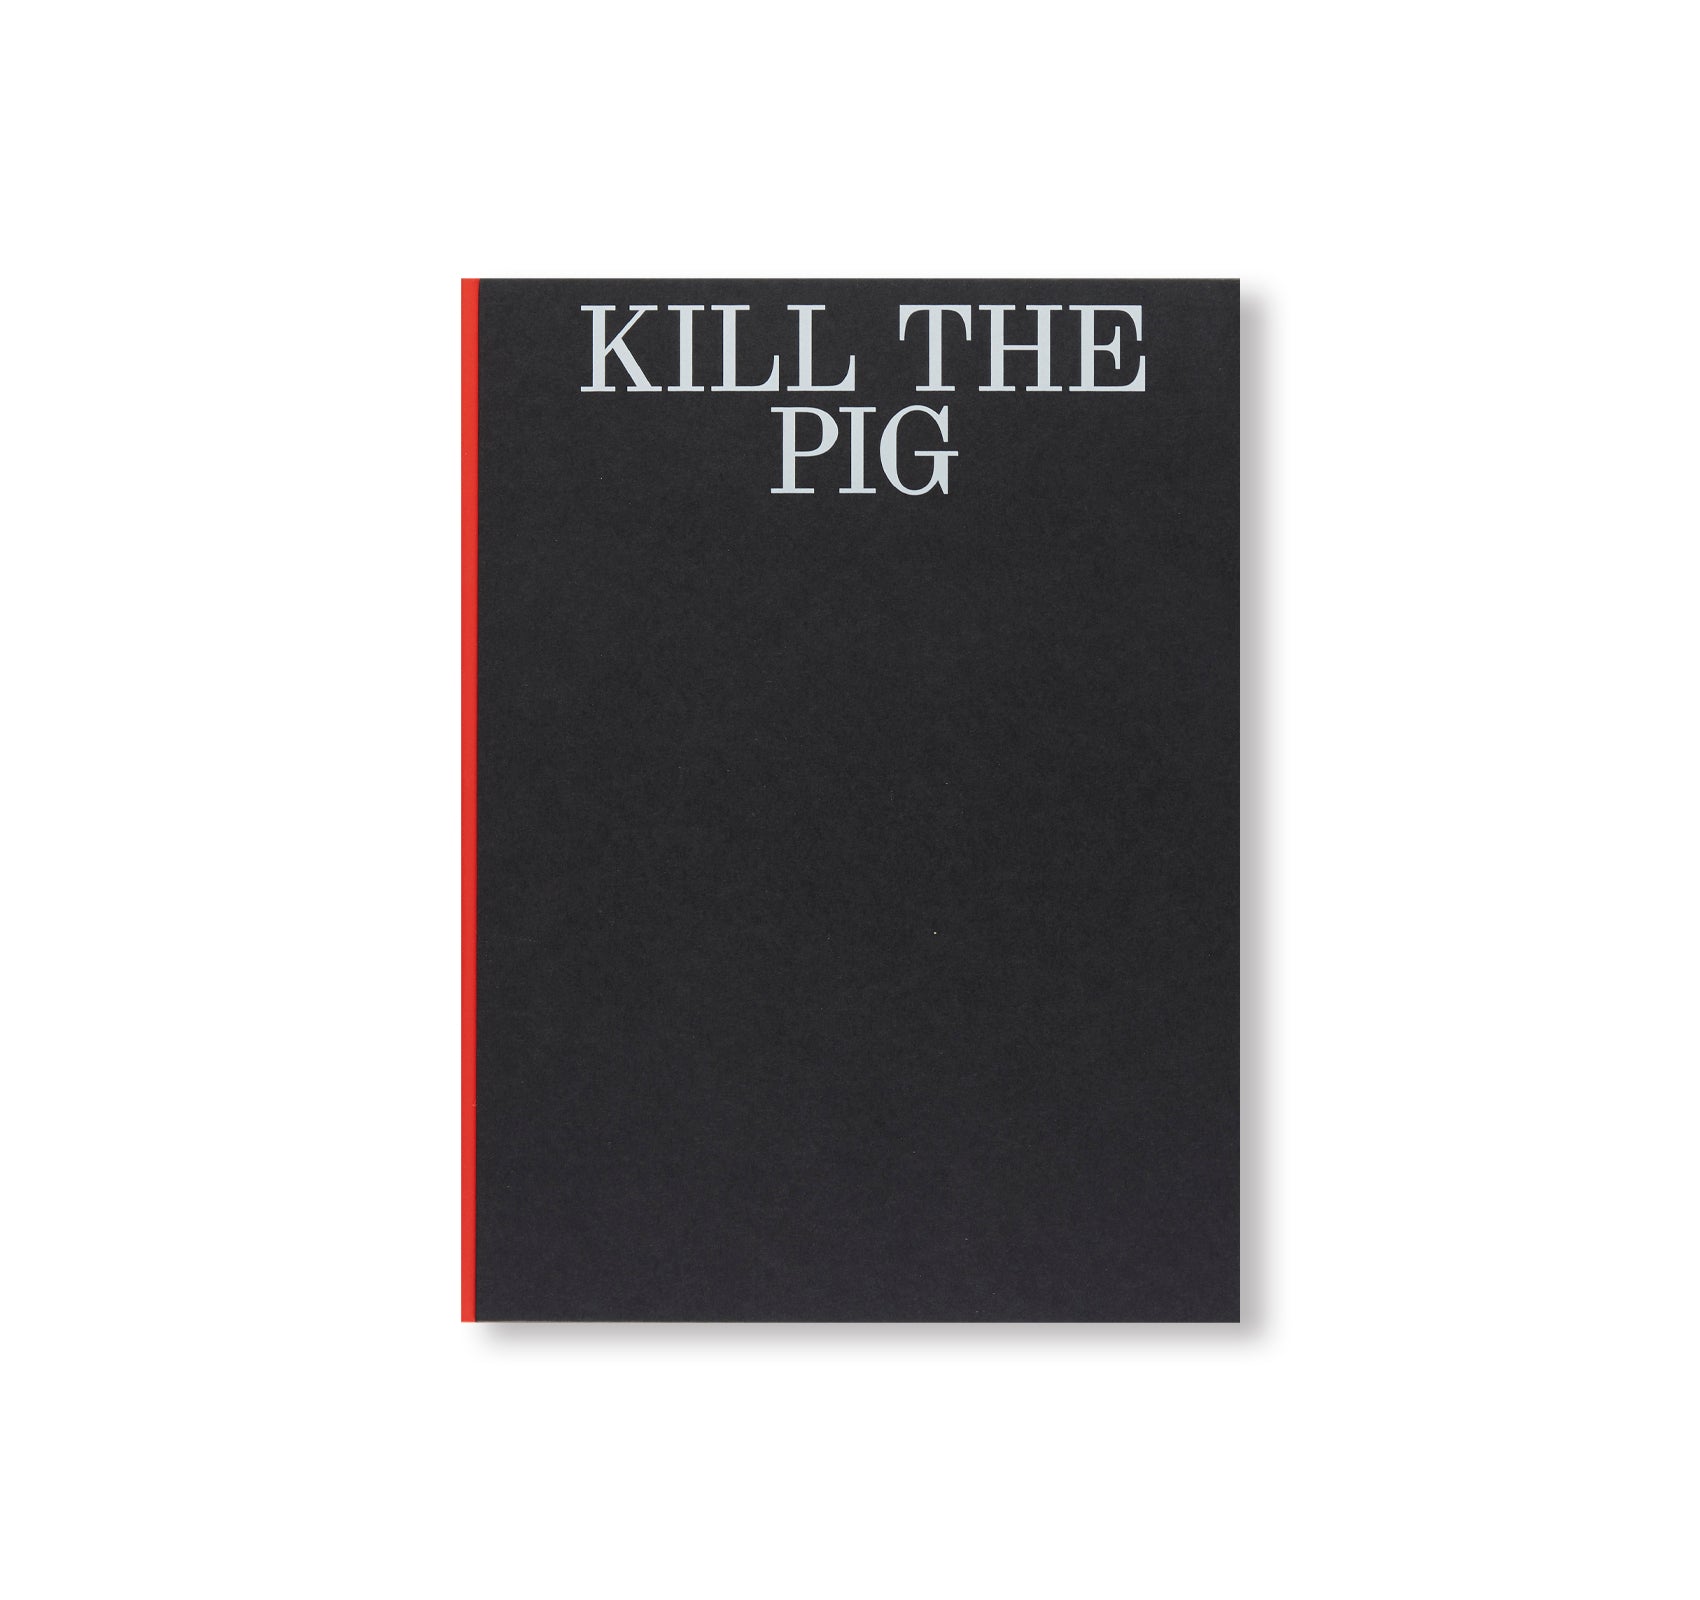 KILL THE PIG by Masahisa Fukase